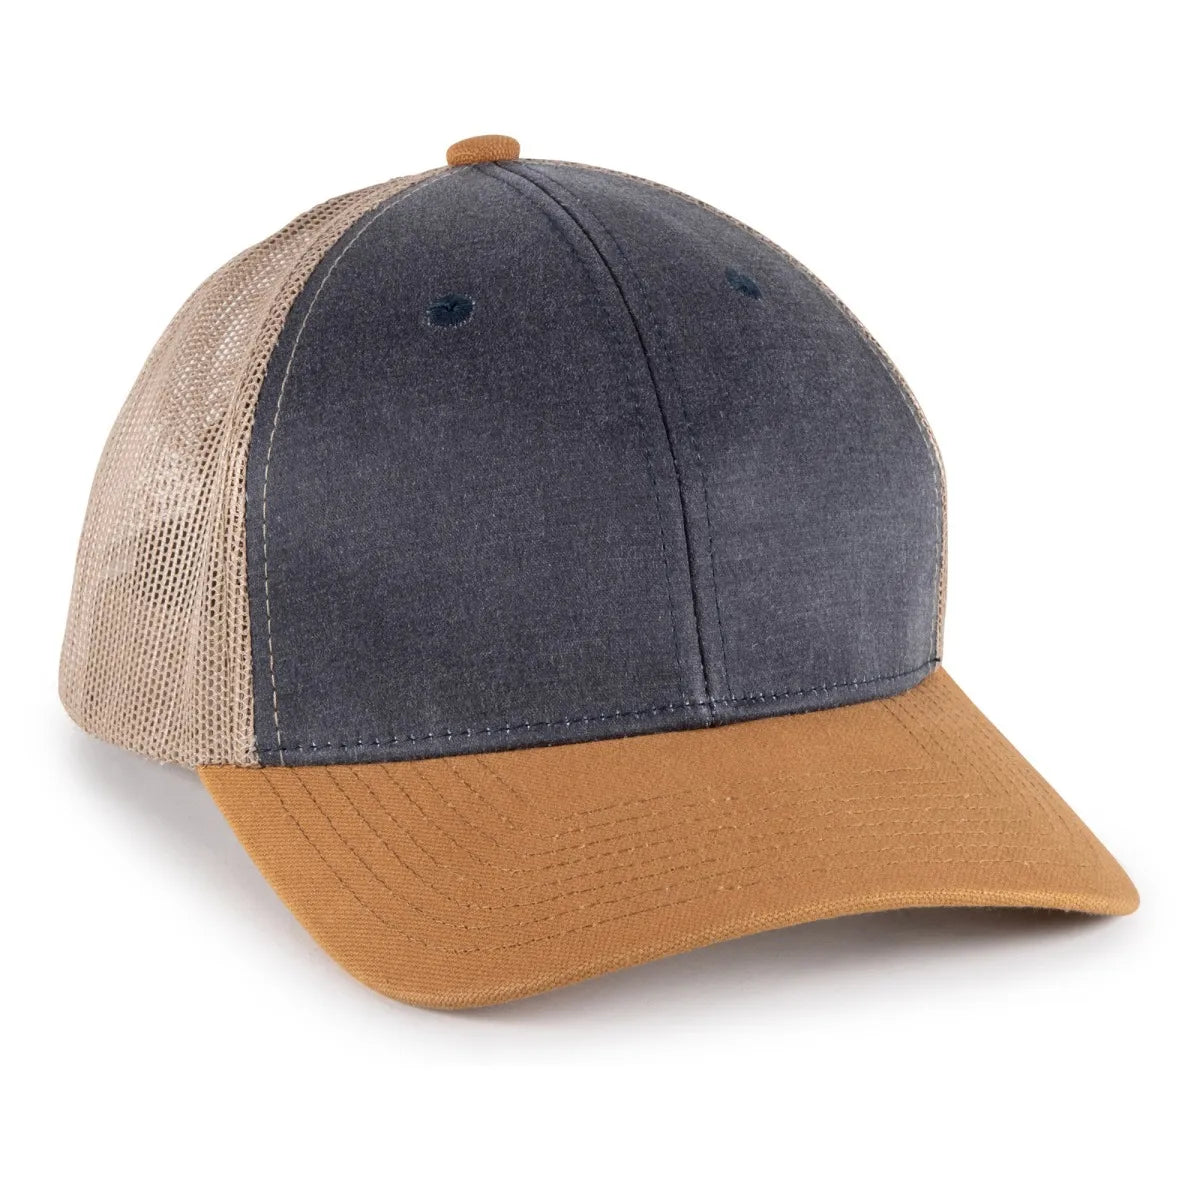 Hard Pigment Dyed Mesh Back Hat - Sport-Smart.com